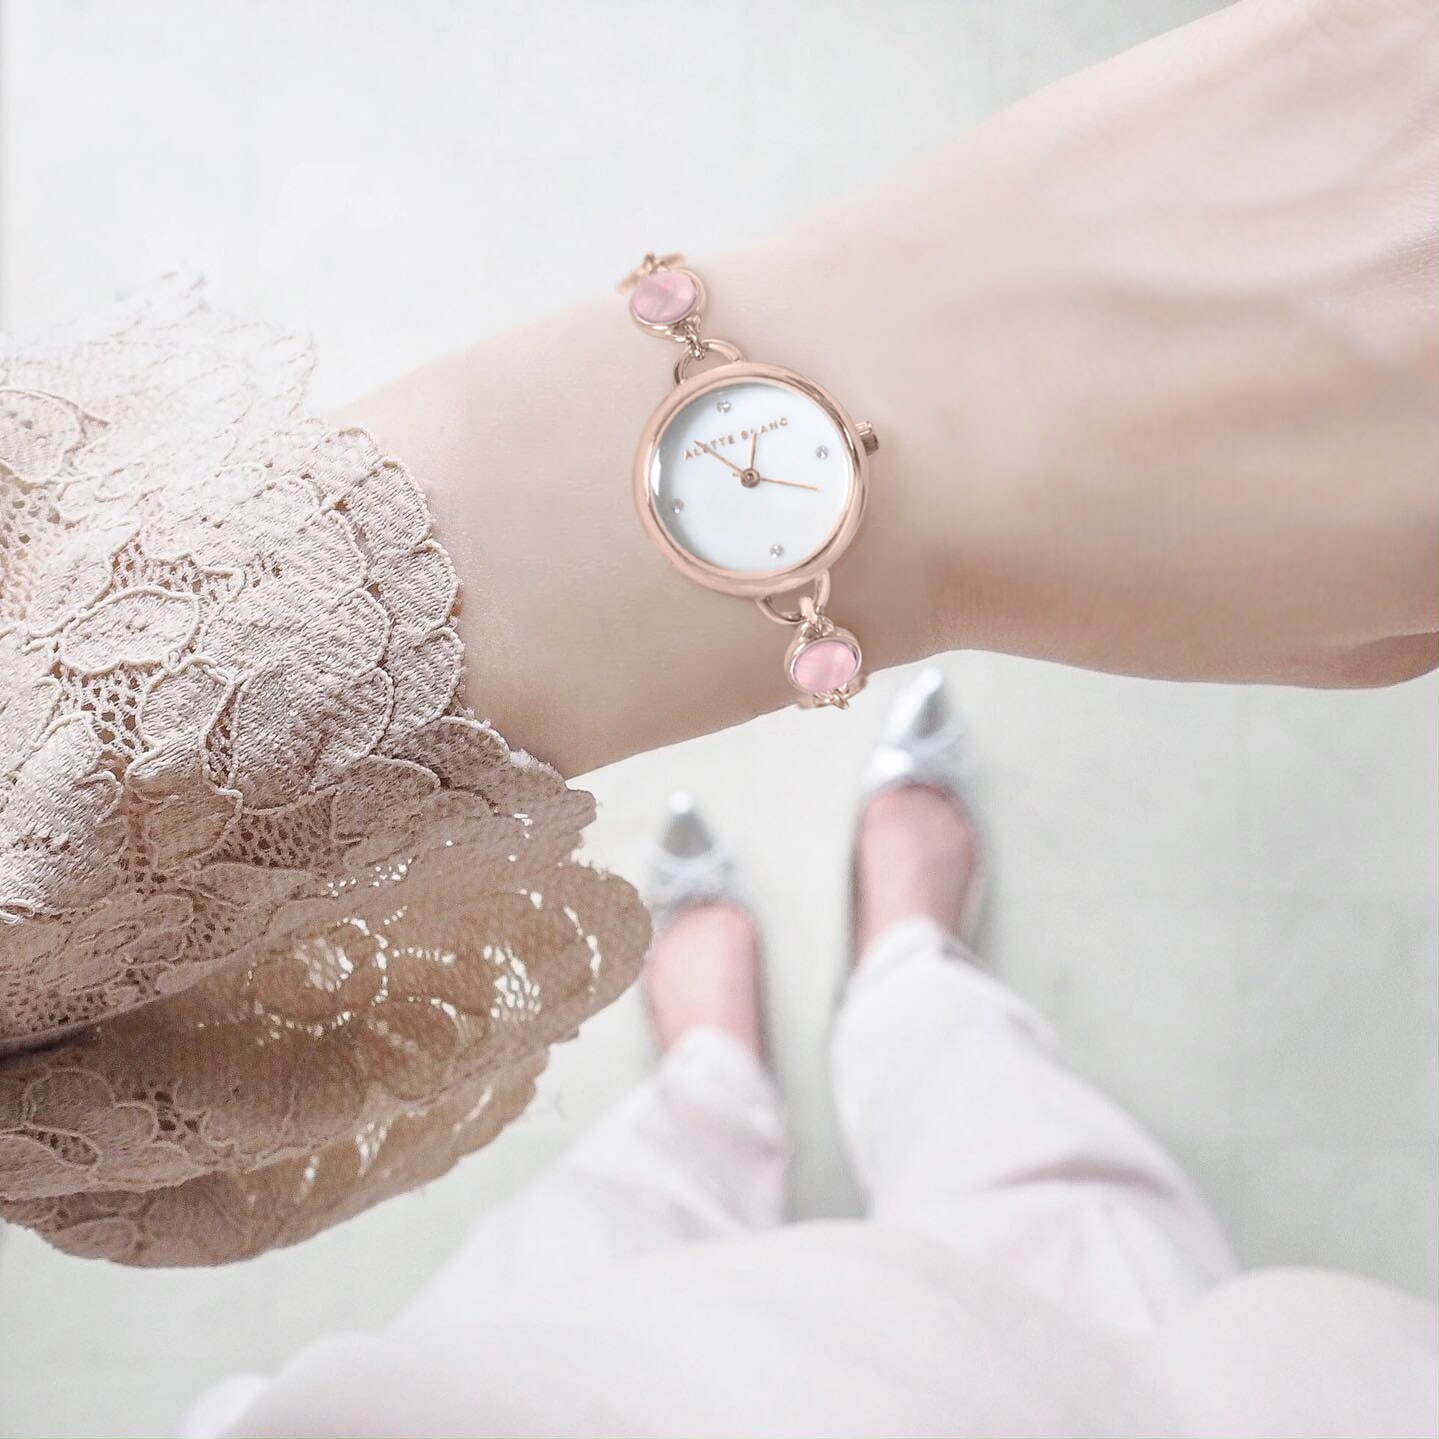 アレットブラン“キャンディ”イメージのブレスレット腕時計、ミント